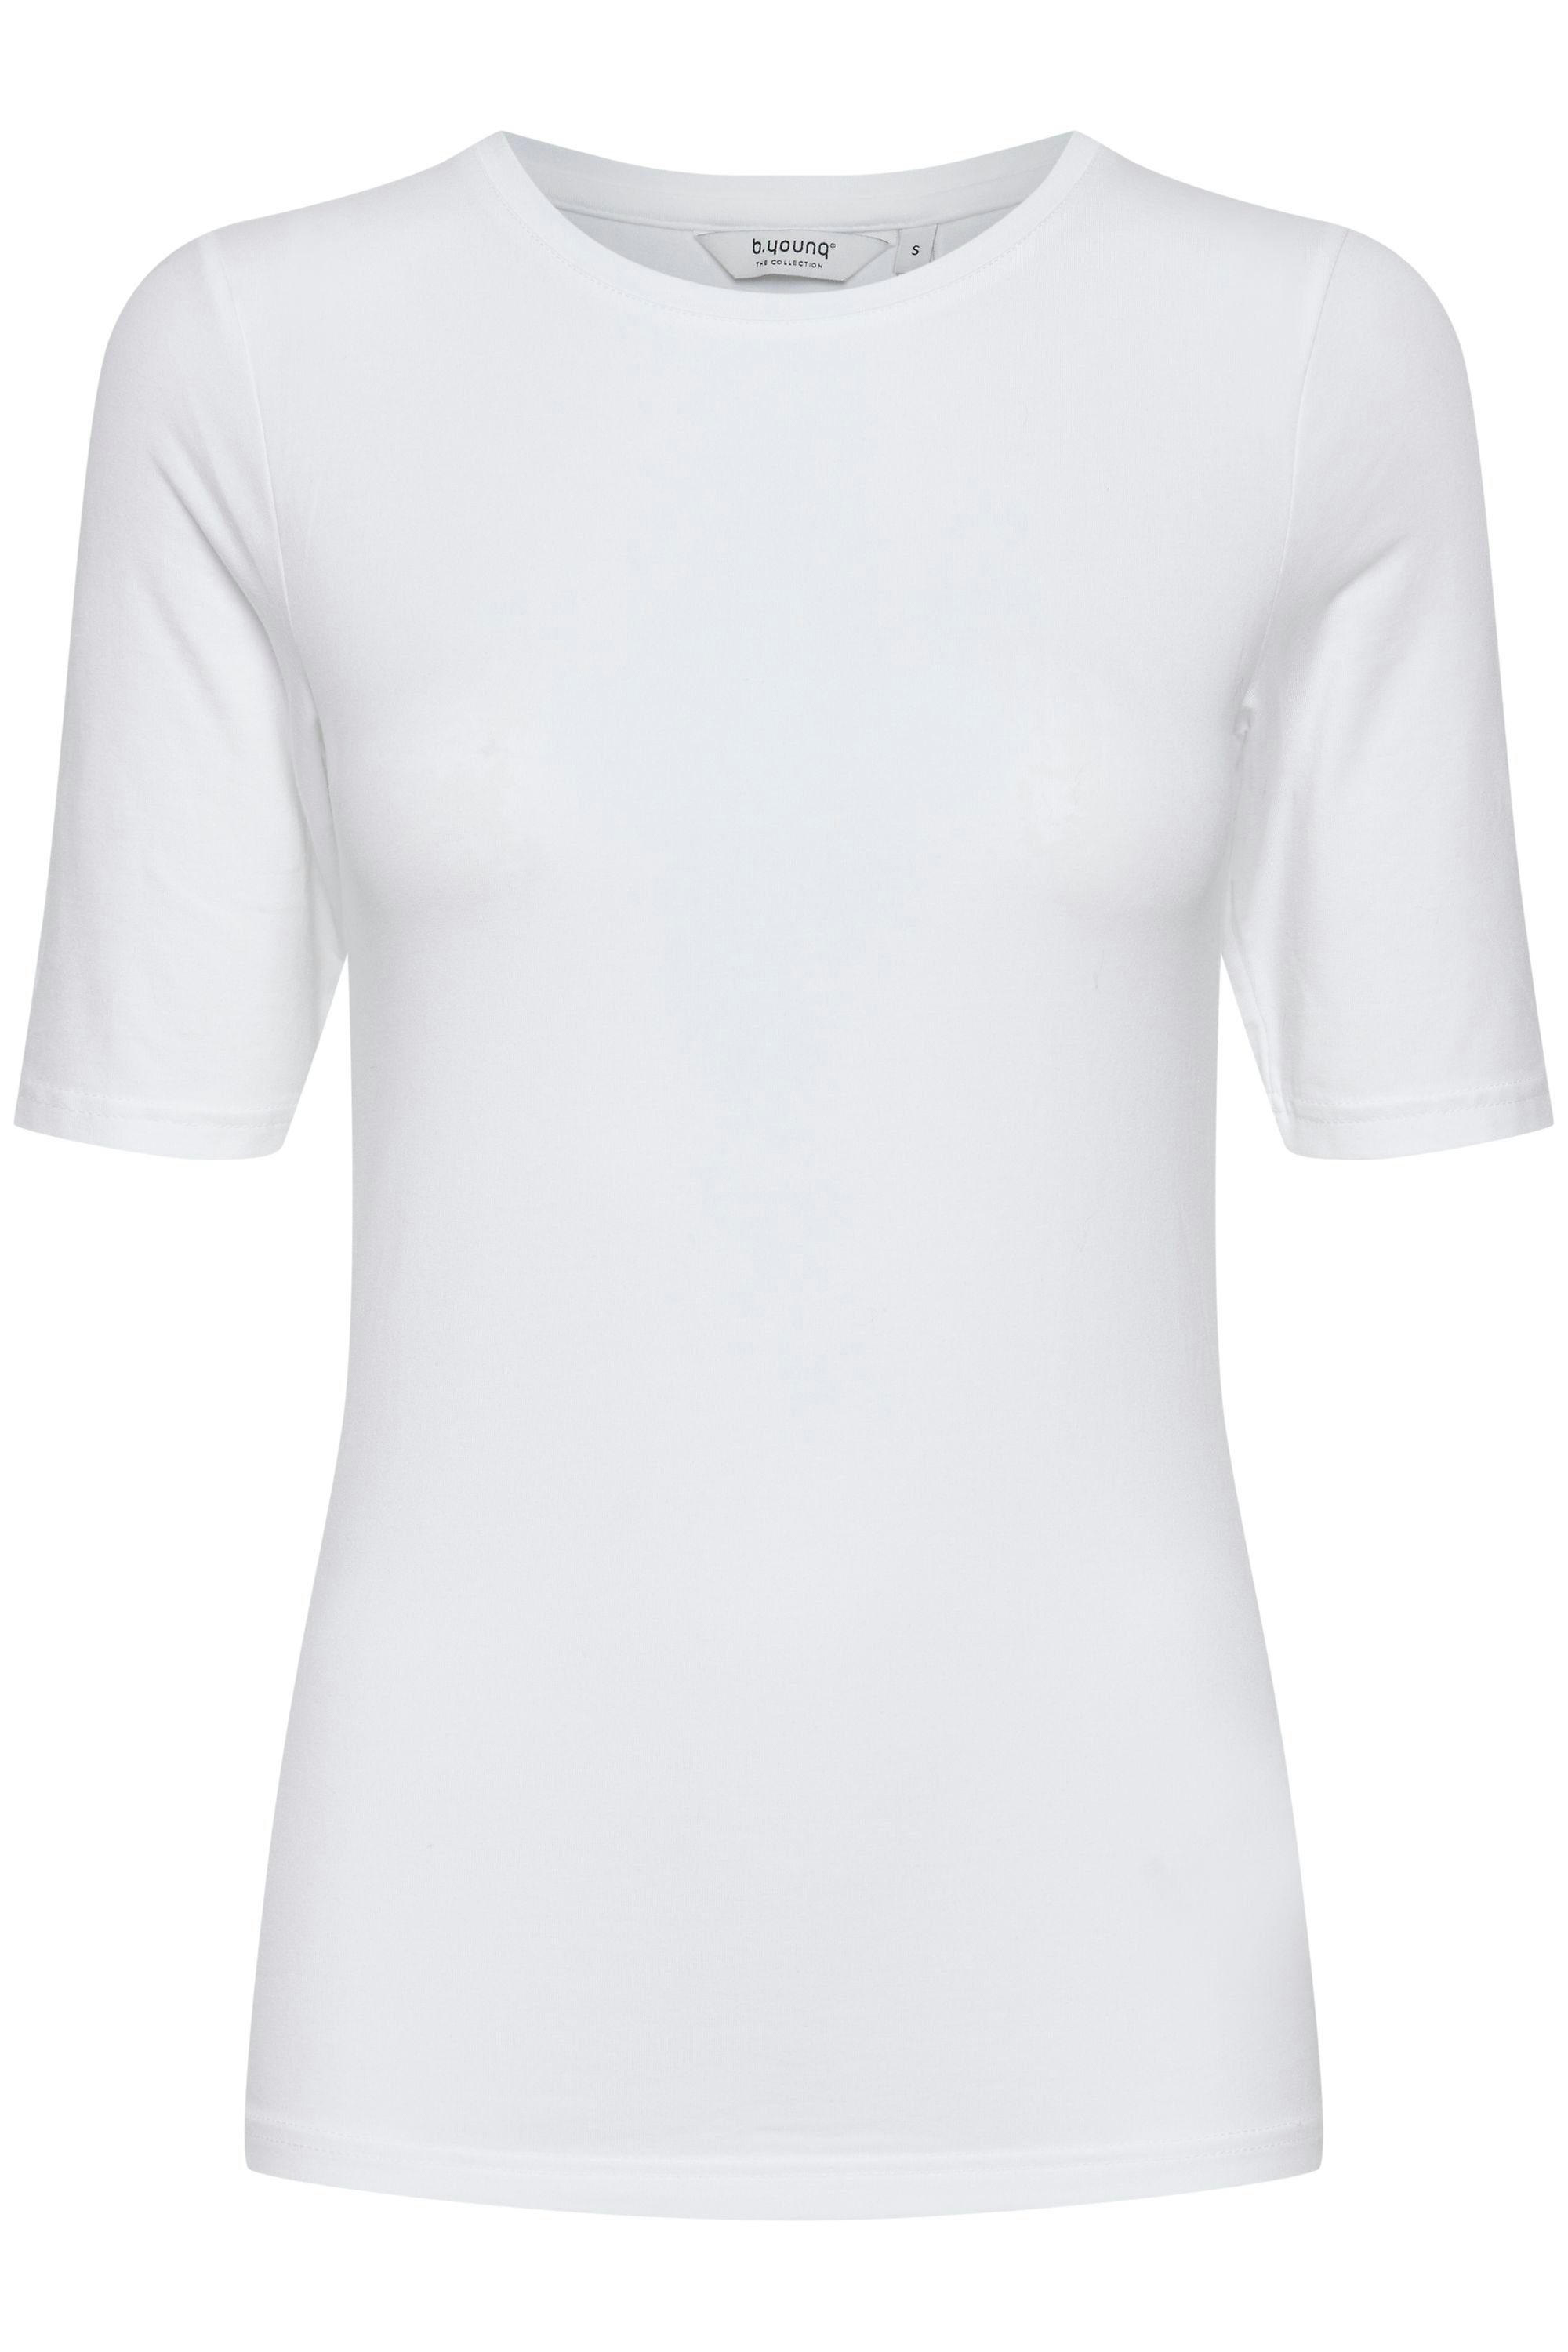 Rundhalsausschnitt T-shirt mit BYPAMILA b.young White -20806528 (80100) T-Shirt Optical TSHIRT